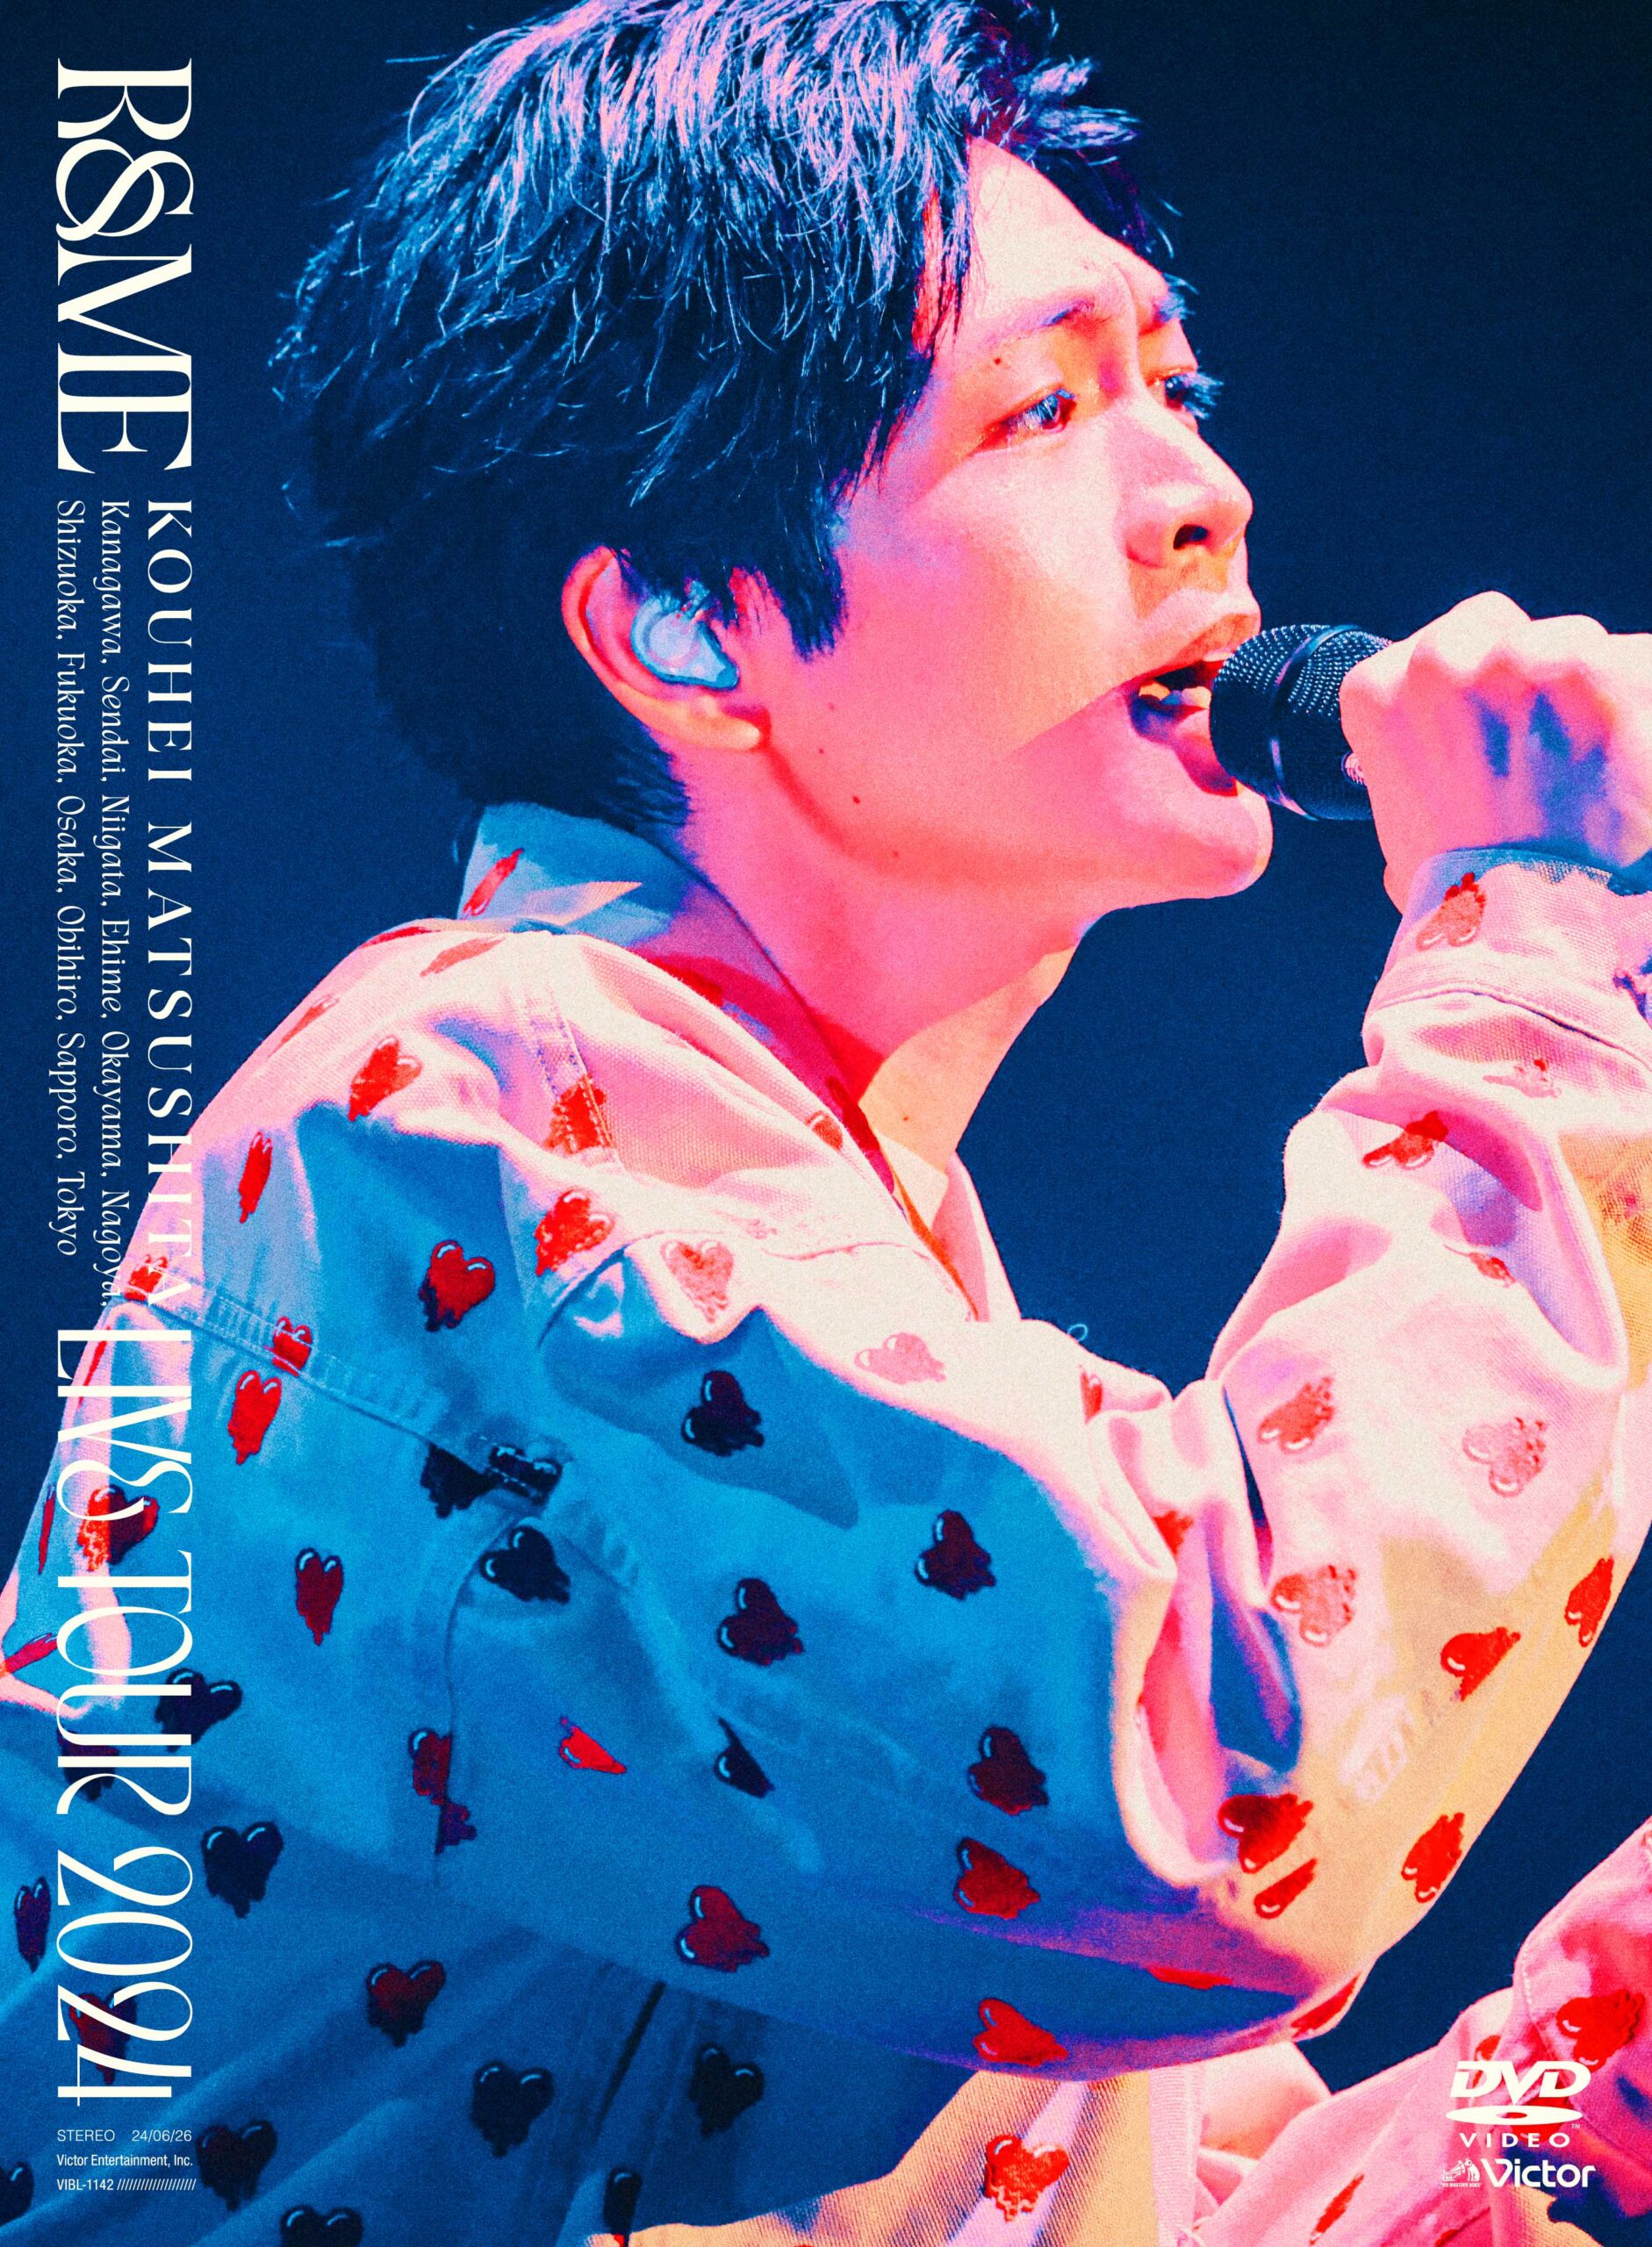 KOUHEI MATSUSHITA LIVE TOUR 2024 〜R&ME〜